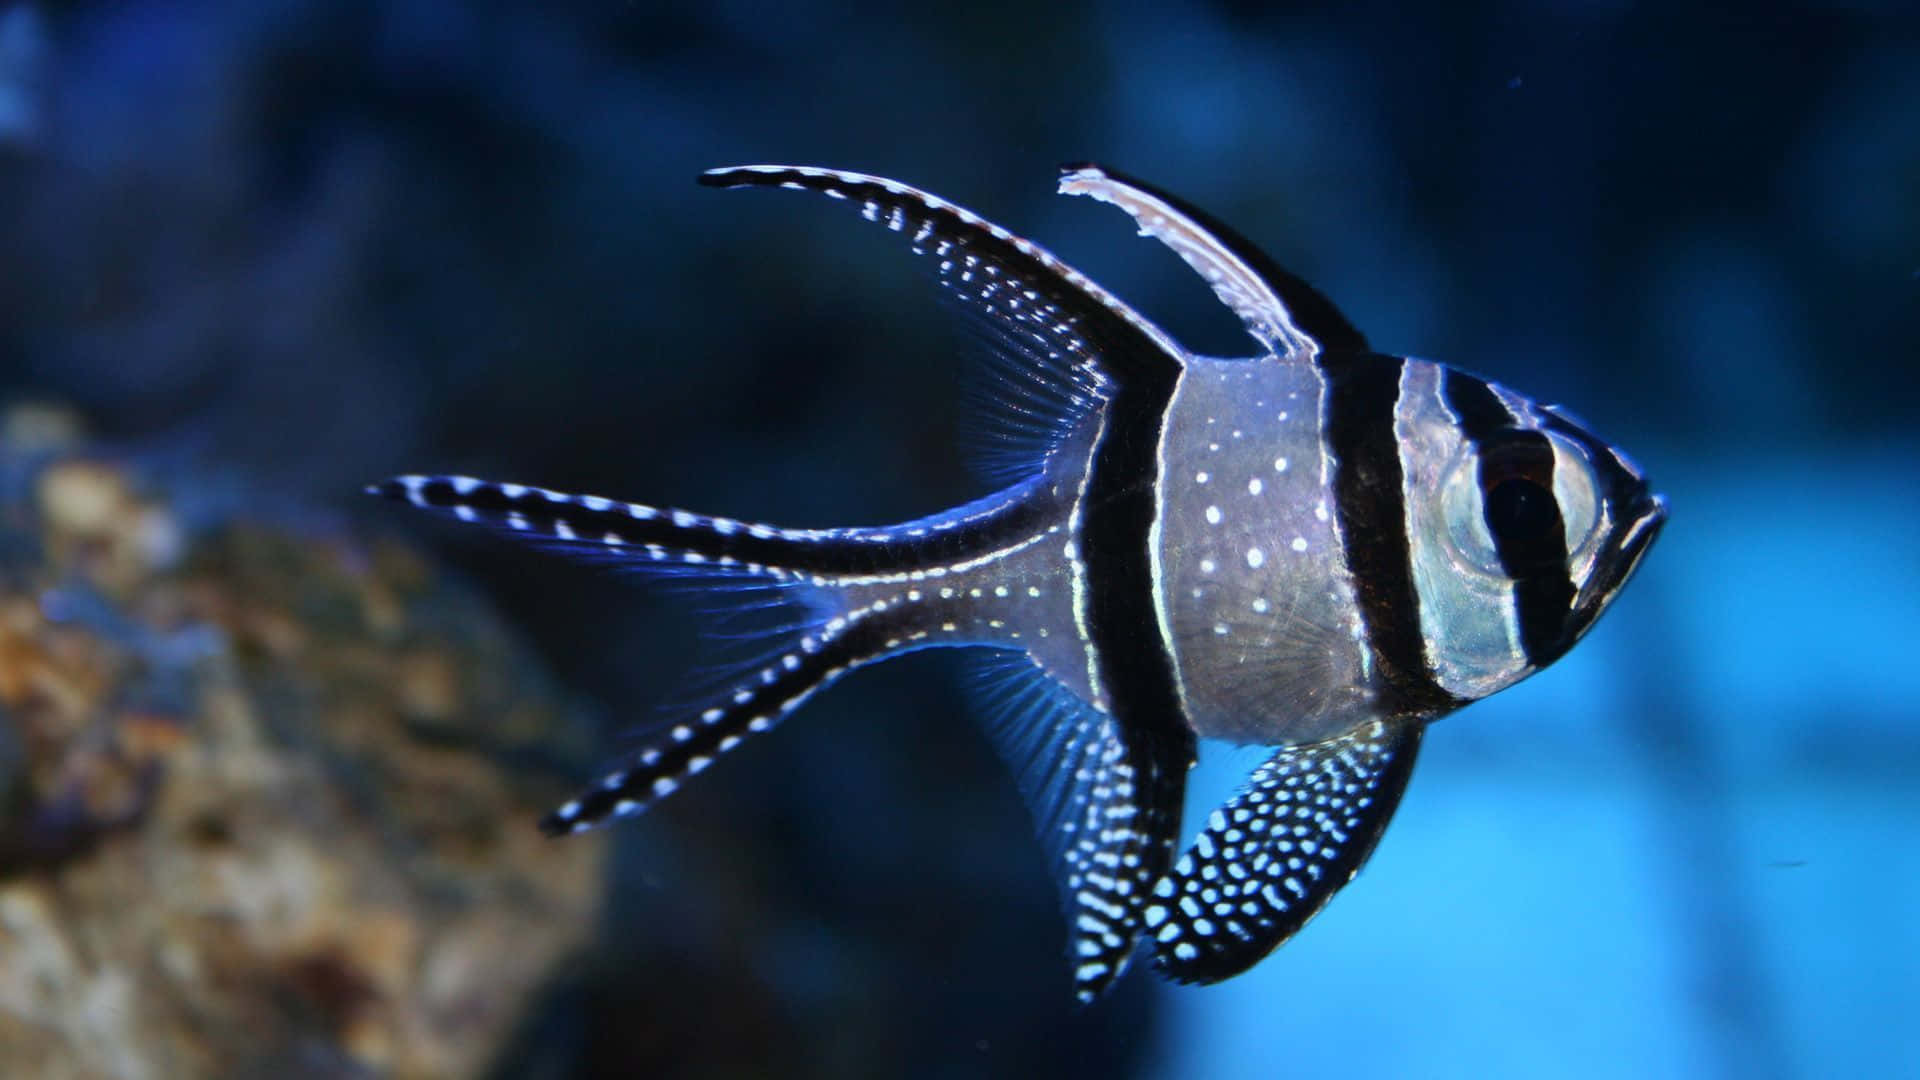 Imsand Schwimmen: Ein Wunderschöner Blau-grüner Fisch Genießt Seine Subtropische Umgebung. Wallpaper